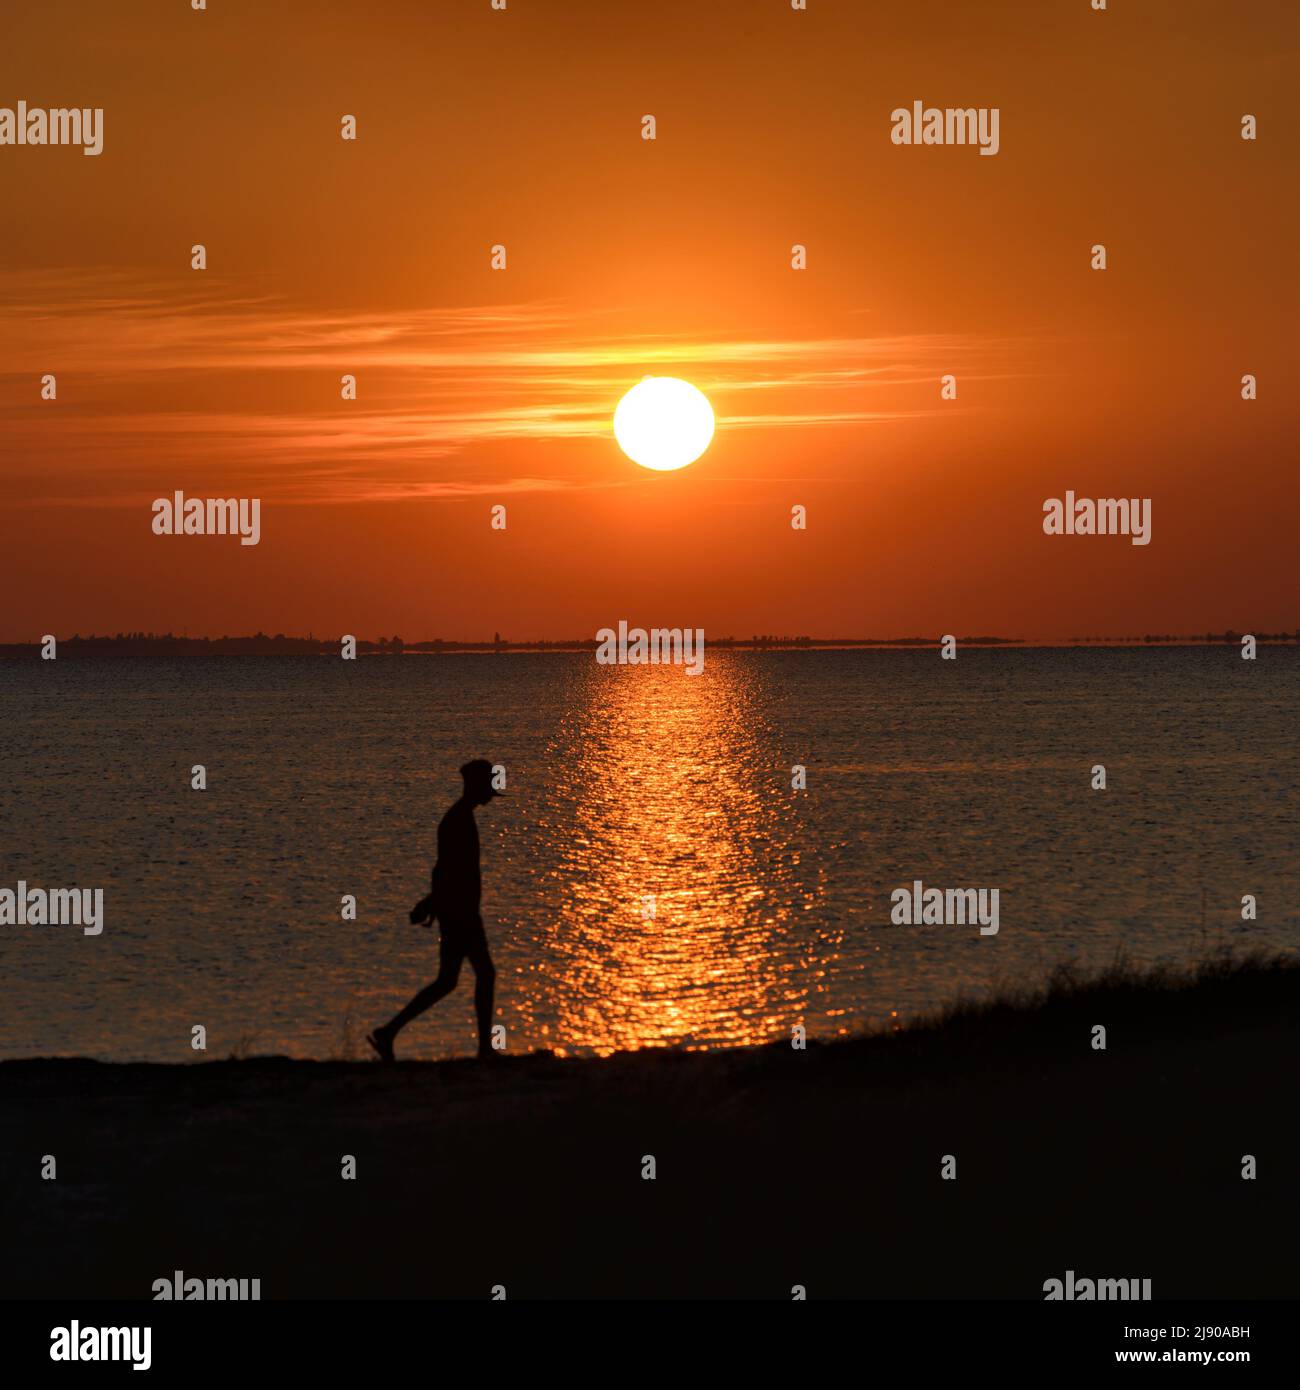 Dramatischer Sonnenuntergang am Meer mit der Silhouette einer wandelenden Person im Rahmen im Licht der untergehenden Sonne. Asowschen Meer, Ukraine Stockfoto